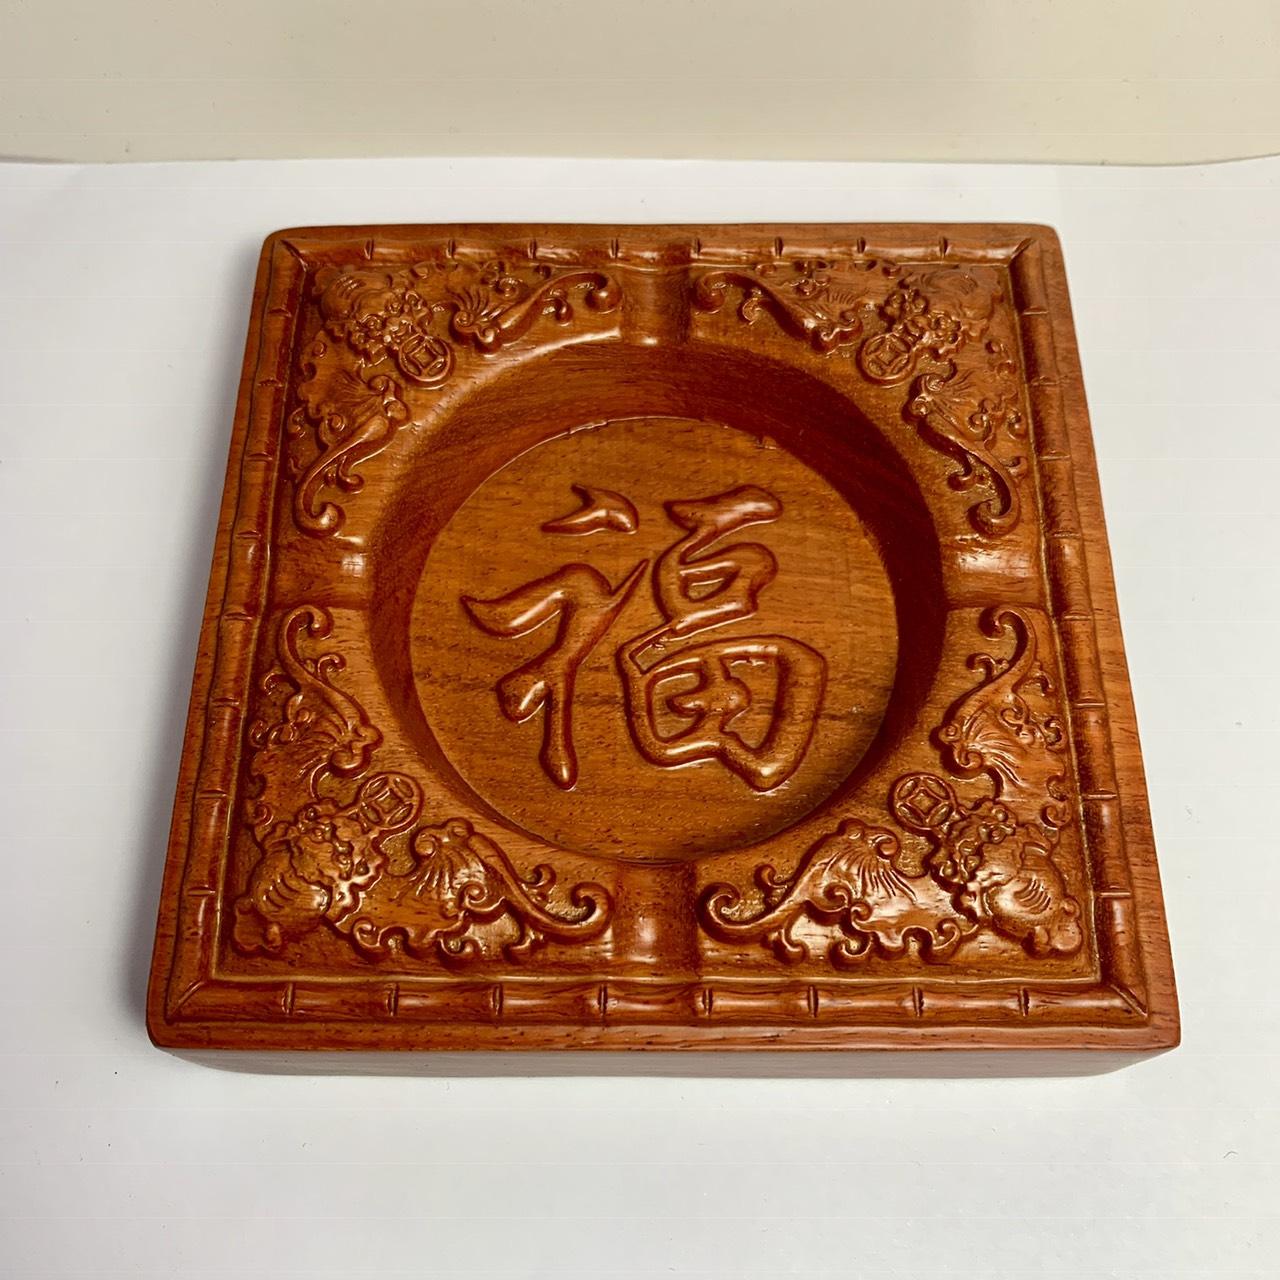 Gạt tàn thuốc gỗ hương đỏ i mặt chạm chữ phong thủy NK12 (13 cm x 13 cm x 3,5cm )